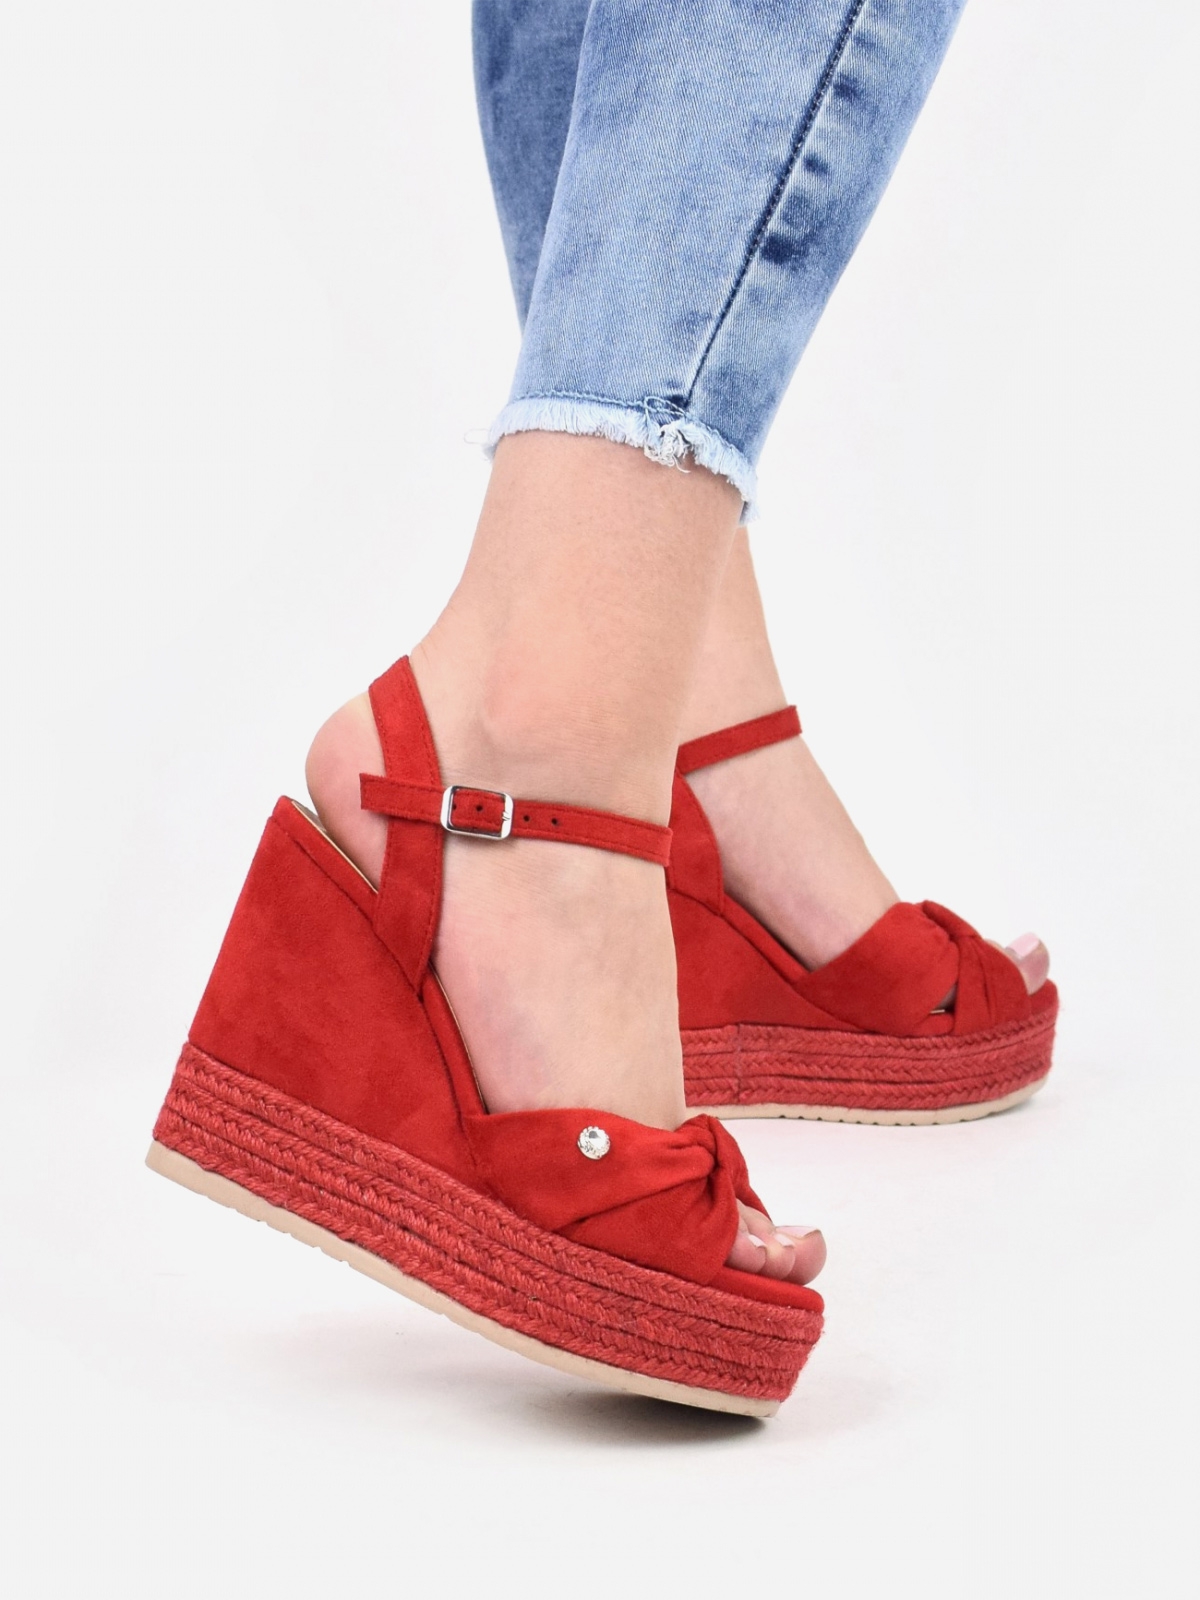 Charming design platform sandals in red